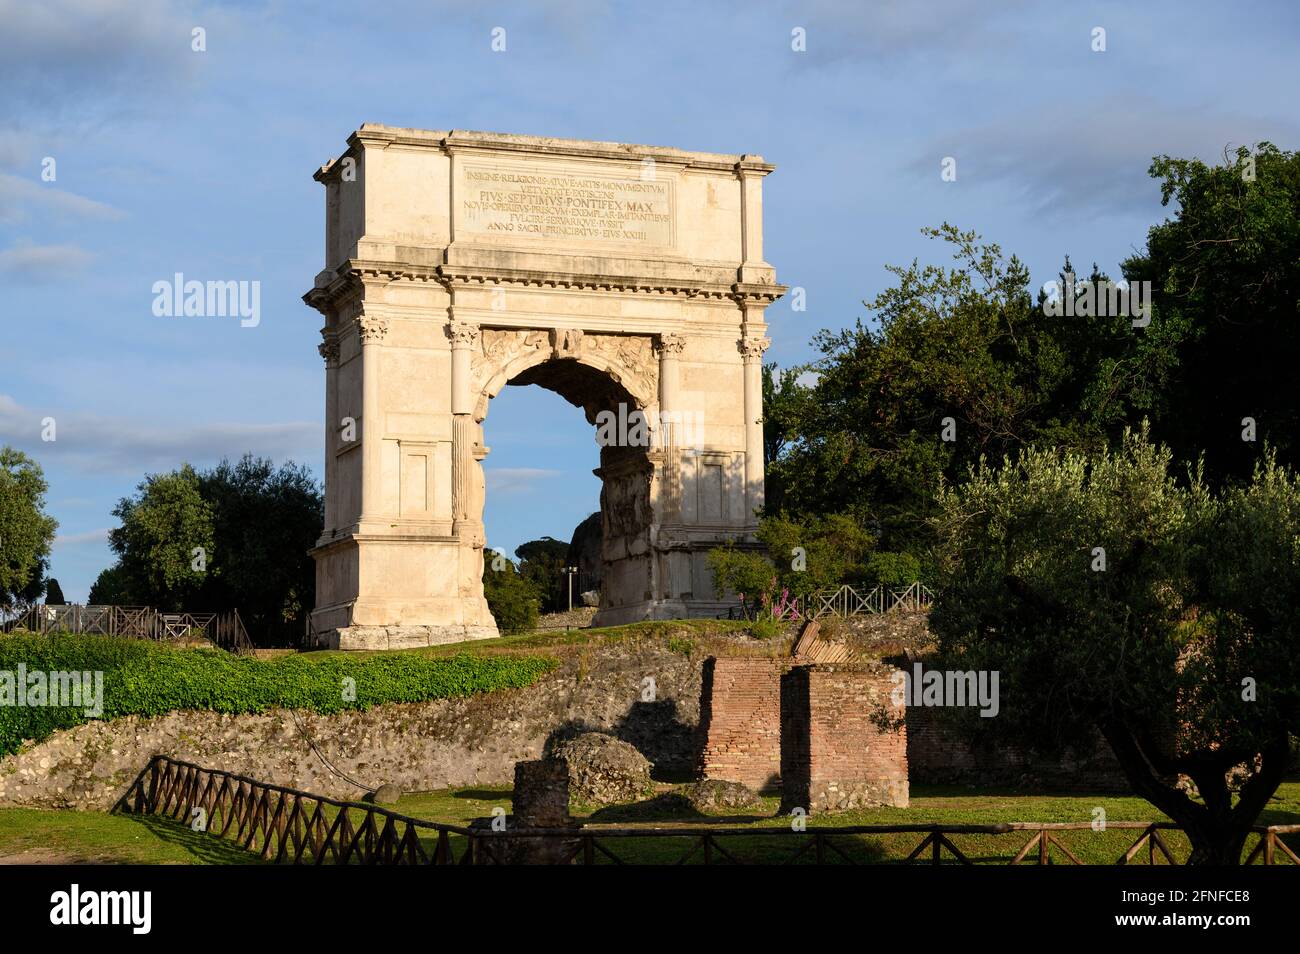 Rom. Italien. Der Titusbogen (Arco di Tito) 1. Jh. n. Chr., an der Via Sacra des römischen Forums. Erbaut vom römischen Kaiser Domitian, um seiner zu gedenken Stockfoto